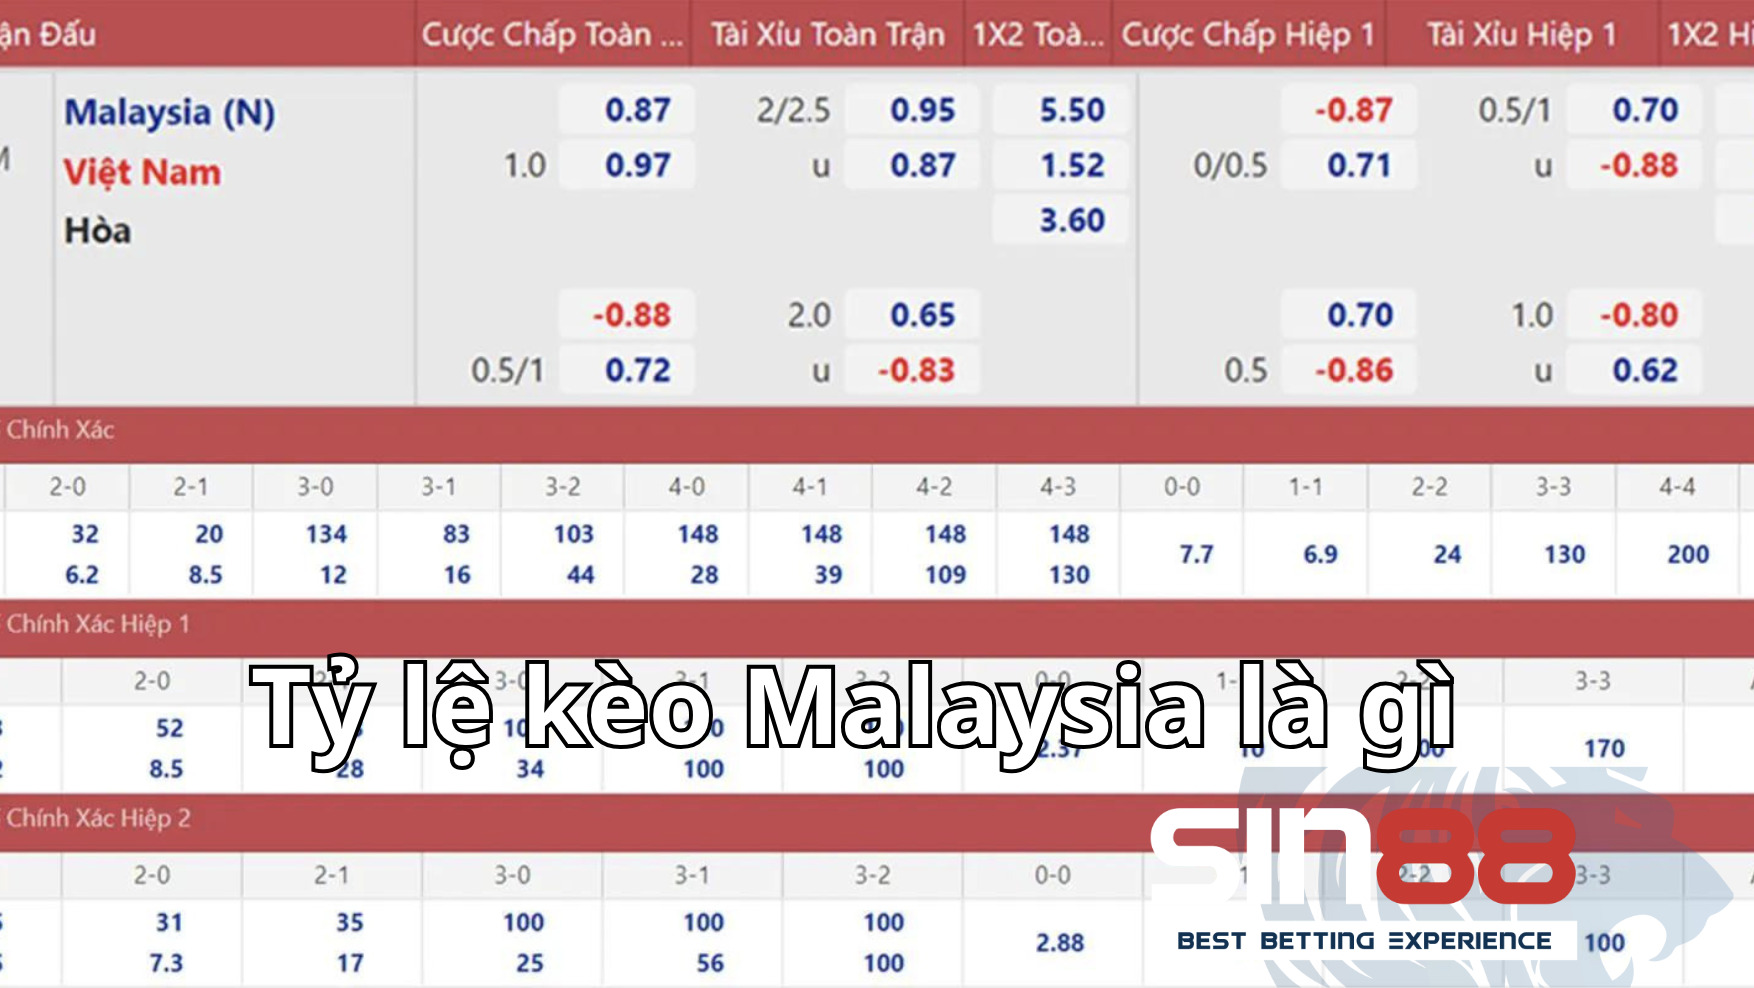 Cách so sánh các tỷ lệ kèo khác với tỷ lệ kèo Malaysia là gì?